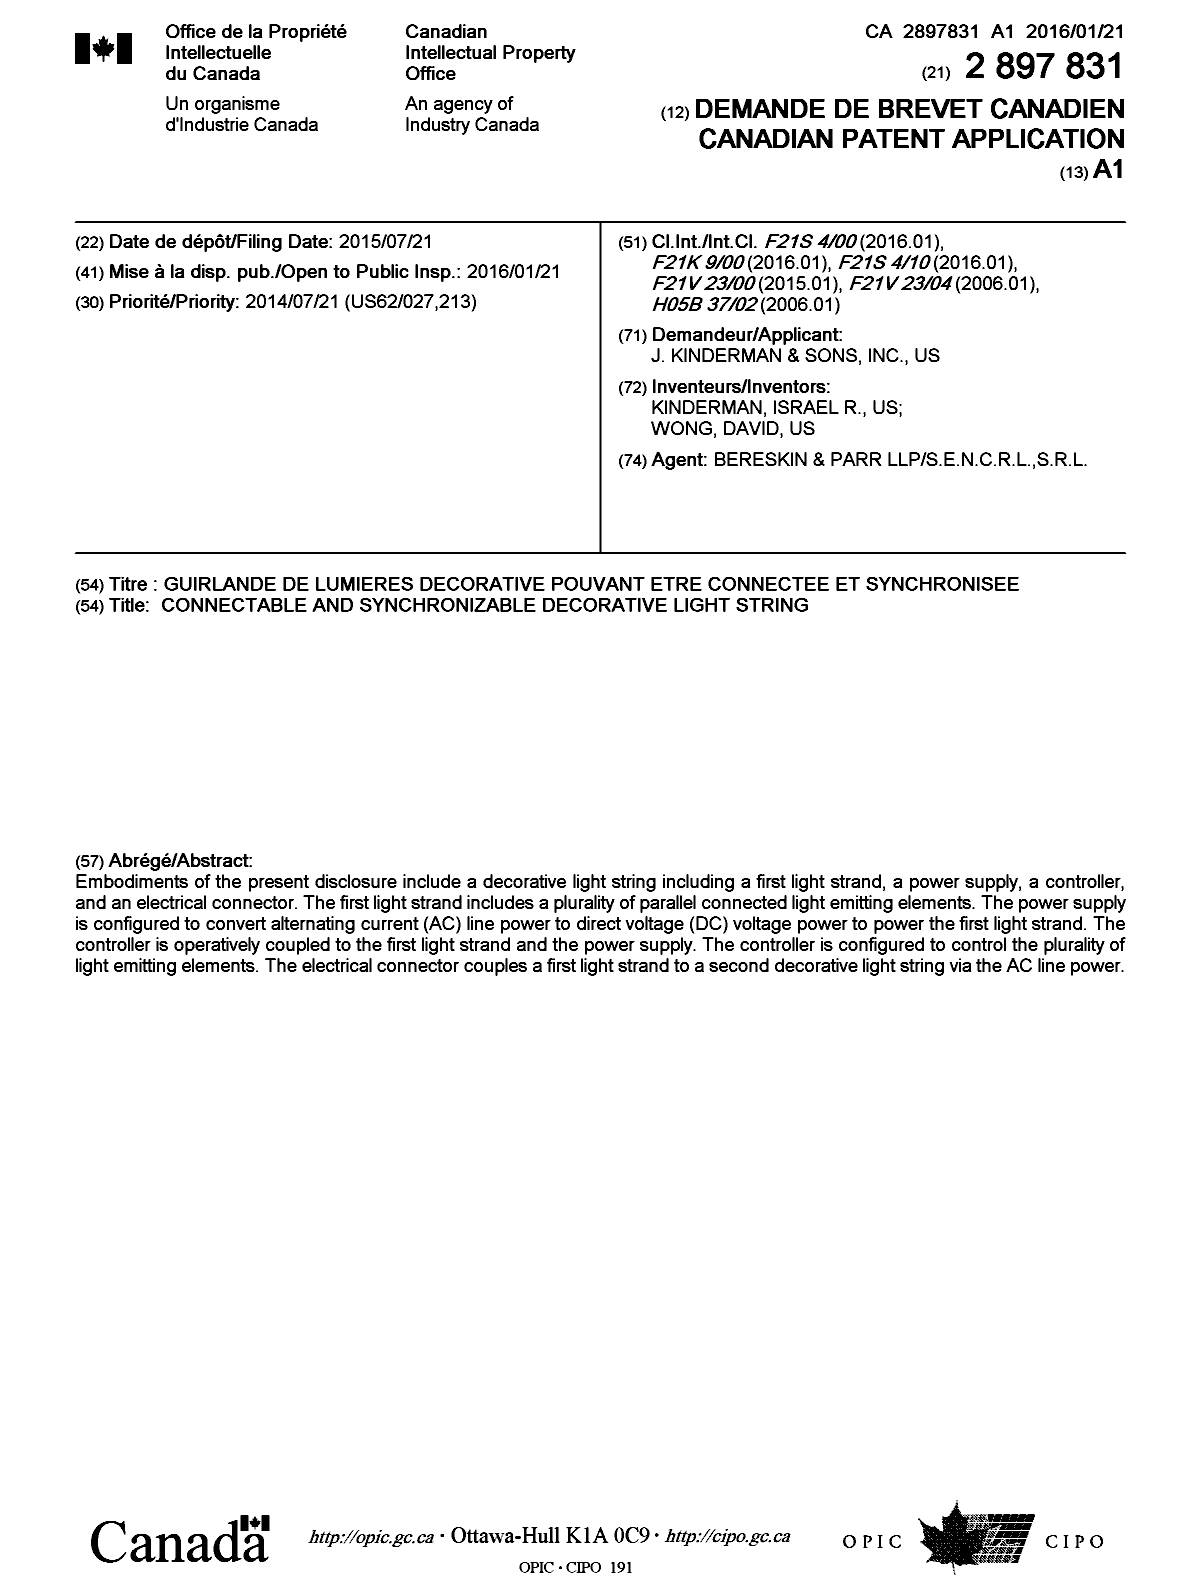 Document de brevet canadien 2897831. Page couverture 20151201. Image 1 de 1